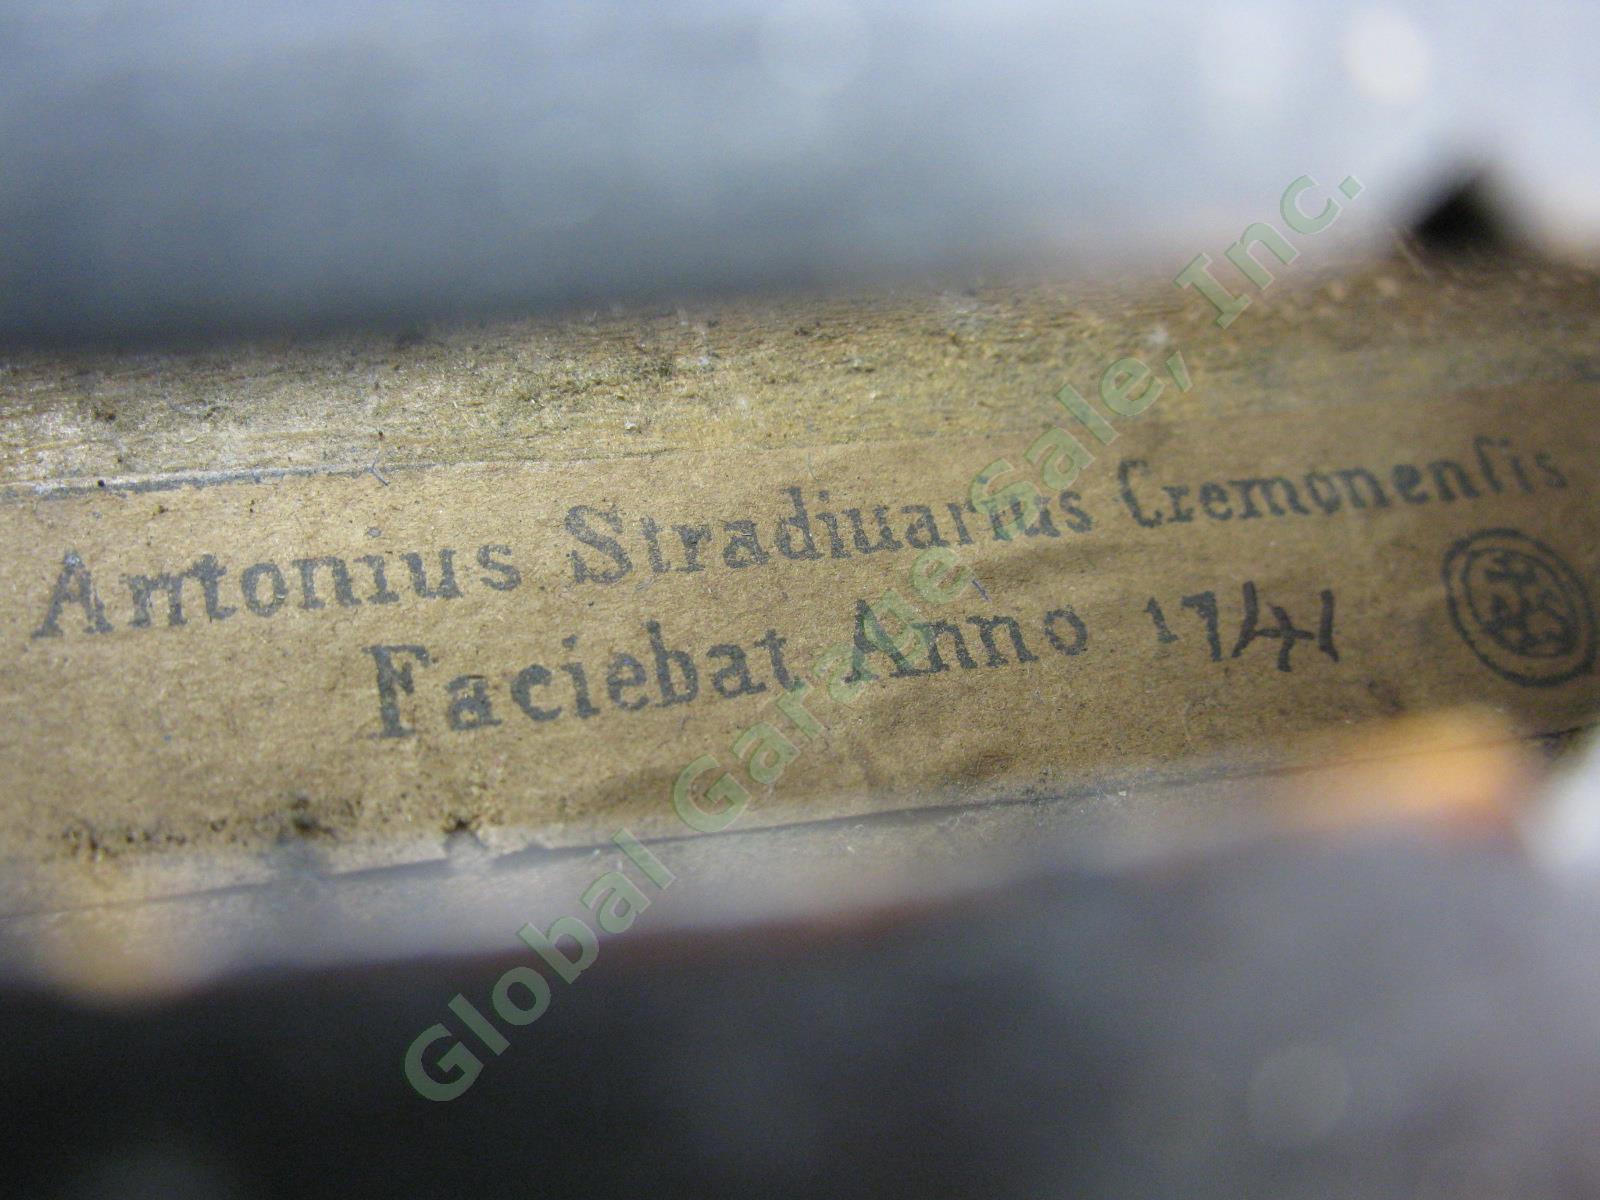 Vtg 4/4 Size 23.5" Antonius Stradivarius Cremonensis Faciebat Anno 1741 Viola ++ 3